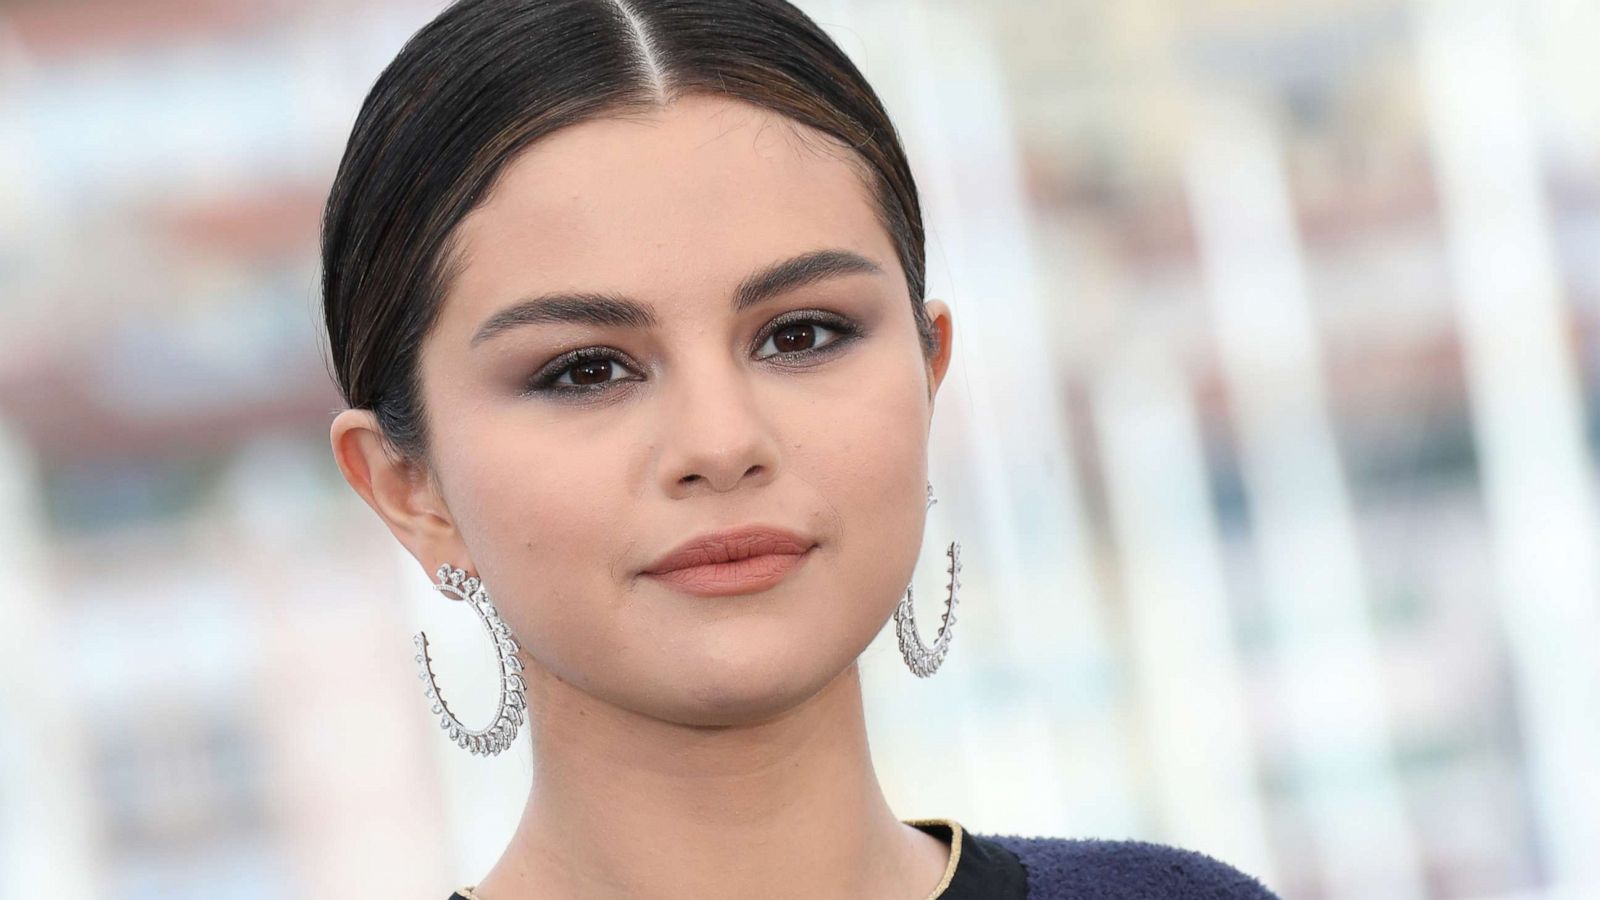 Selena Gomez Expresses Frustration on Social Media: ‘I Find It Frustrating’